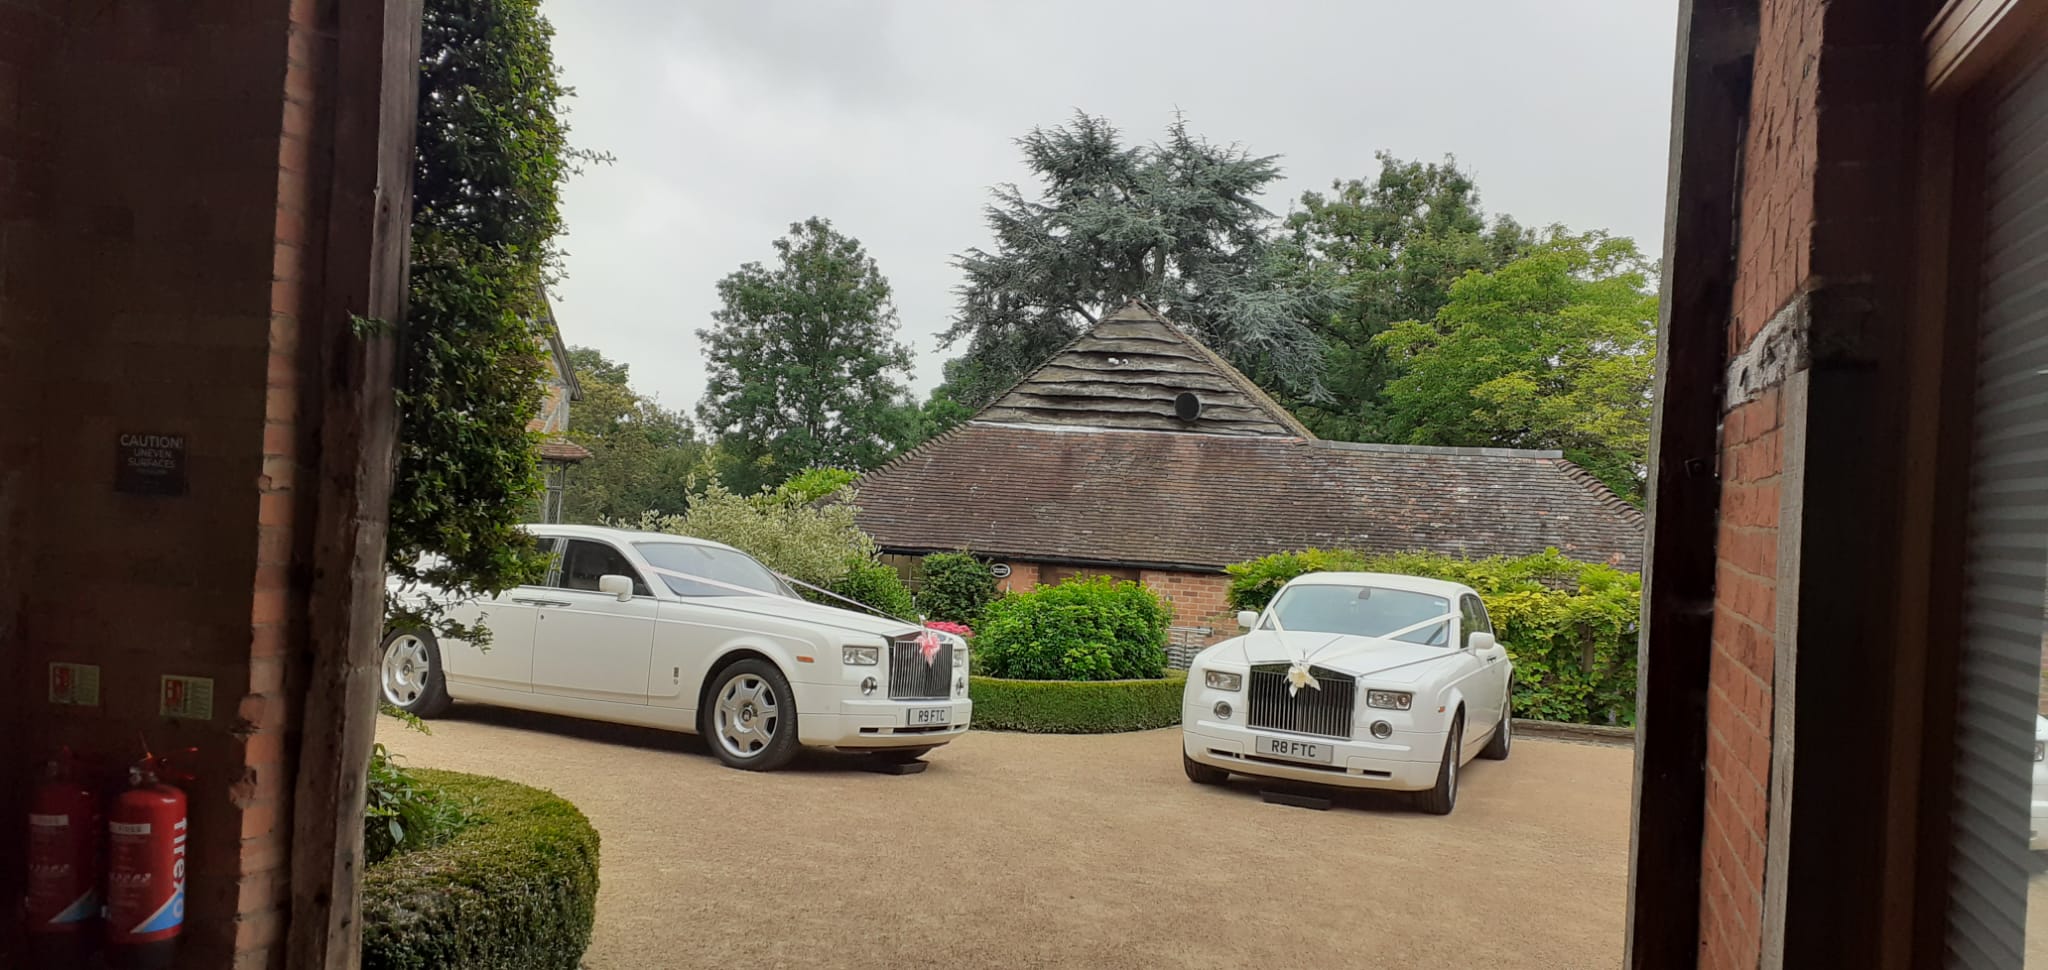 Wedding cars near Oxford